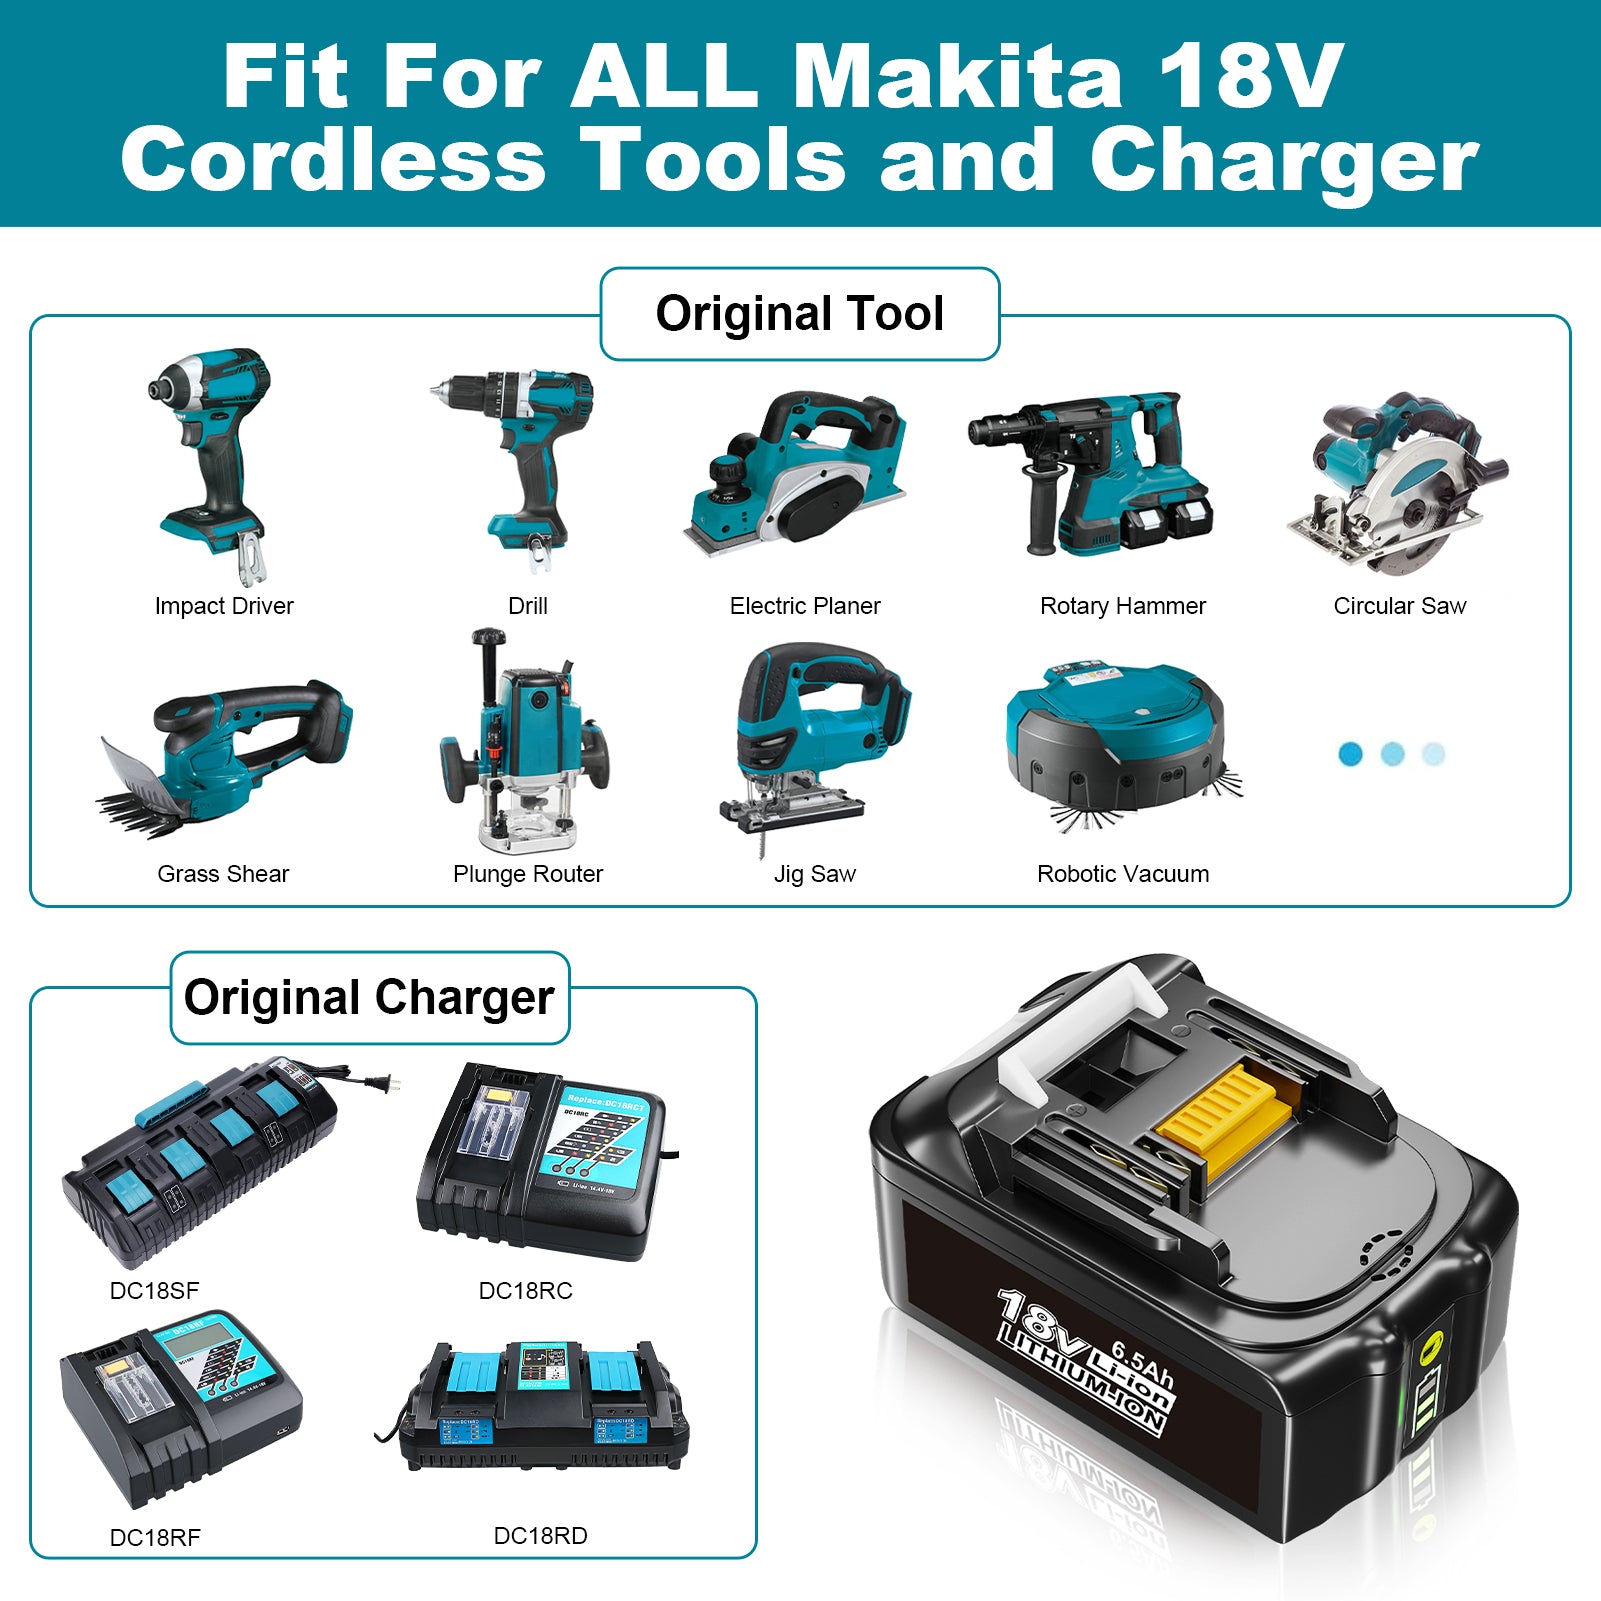 18V 6.5Ah BL1860B Ersatzakku für Makita with LED 4-Stück/Kompatibel mit Makita 18V BL1830B BL1860B BL1820 LXT-400 - Dasbatteries